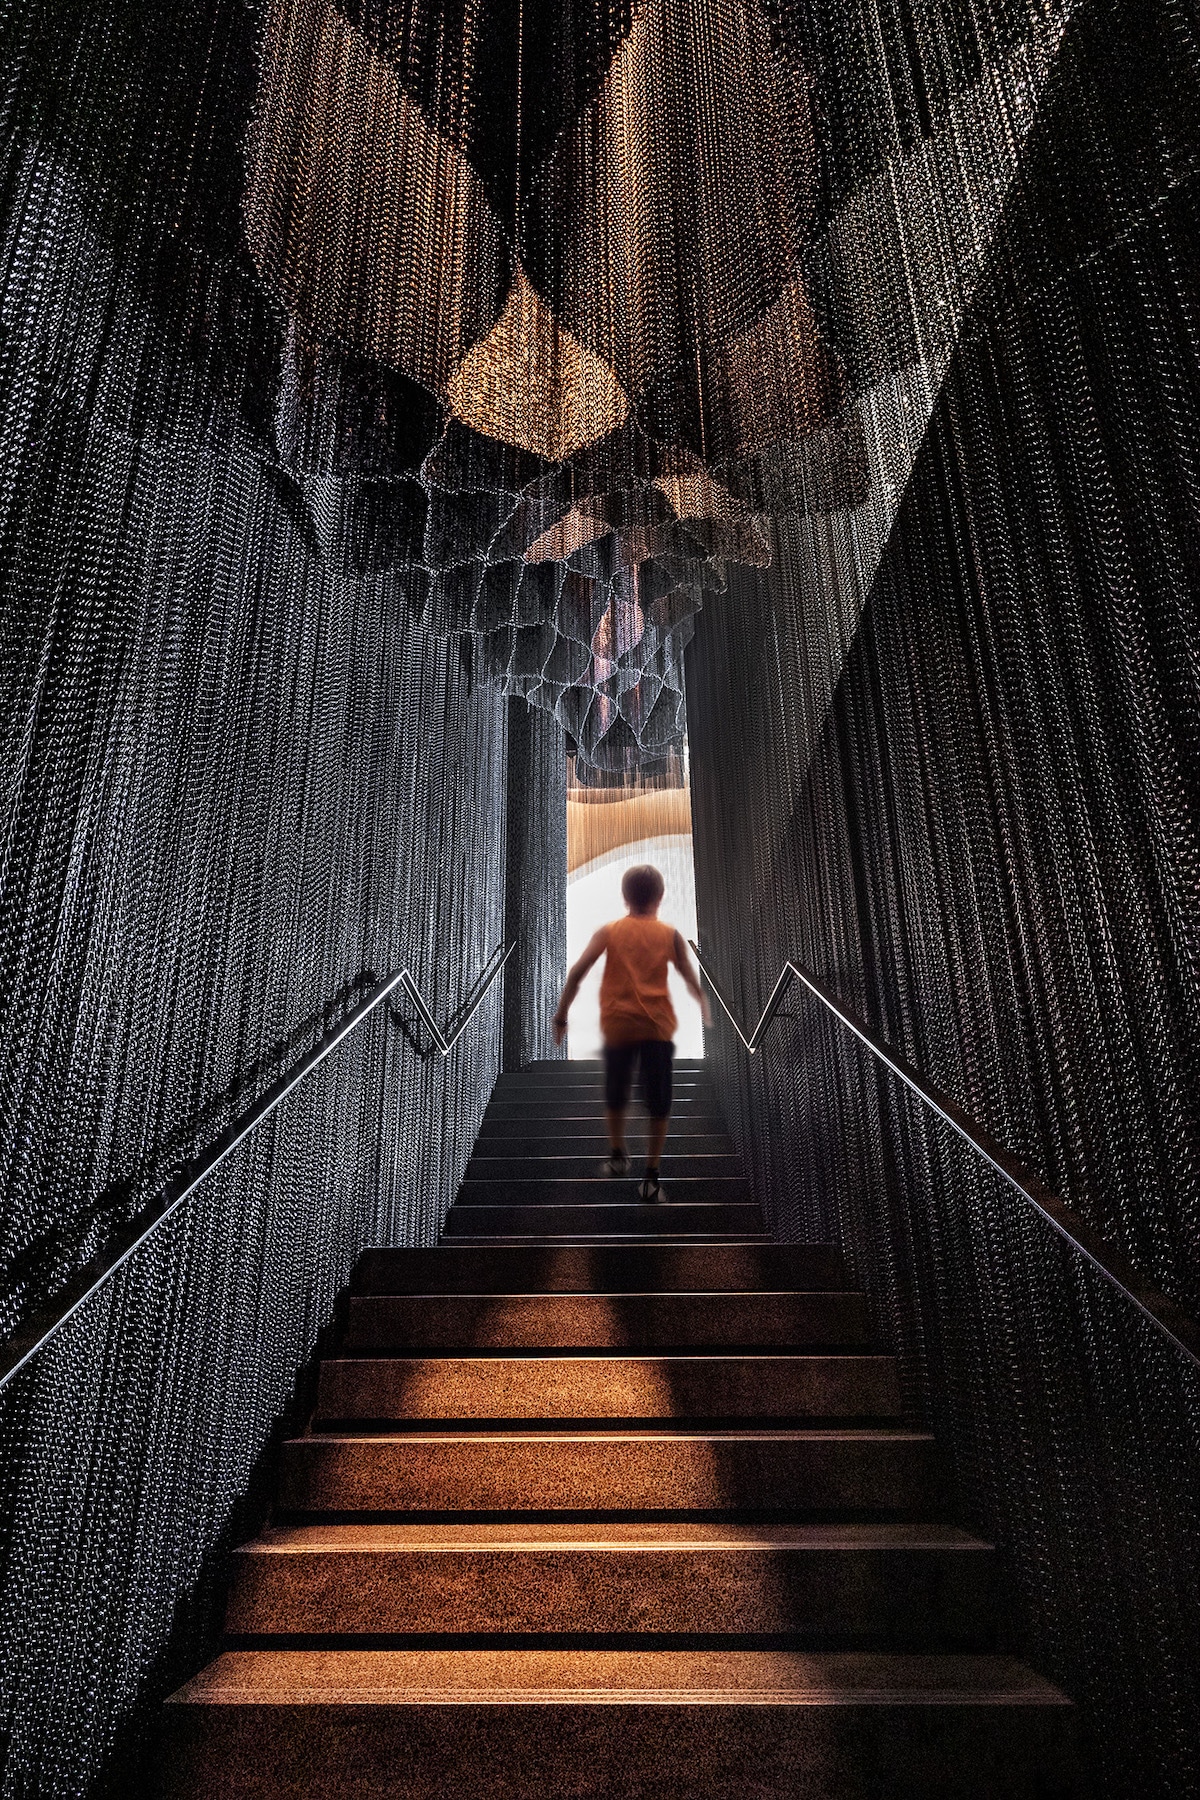 persona pasando por la escalera de cadenas diseñada pr Kengo Kuma para la Casa Batlló de antoni gaudi